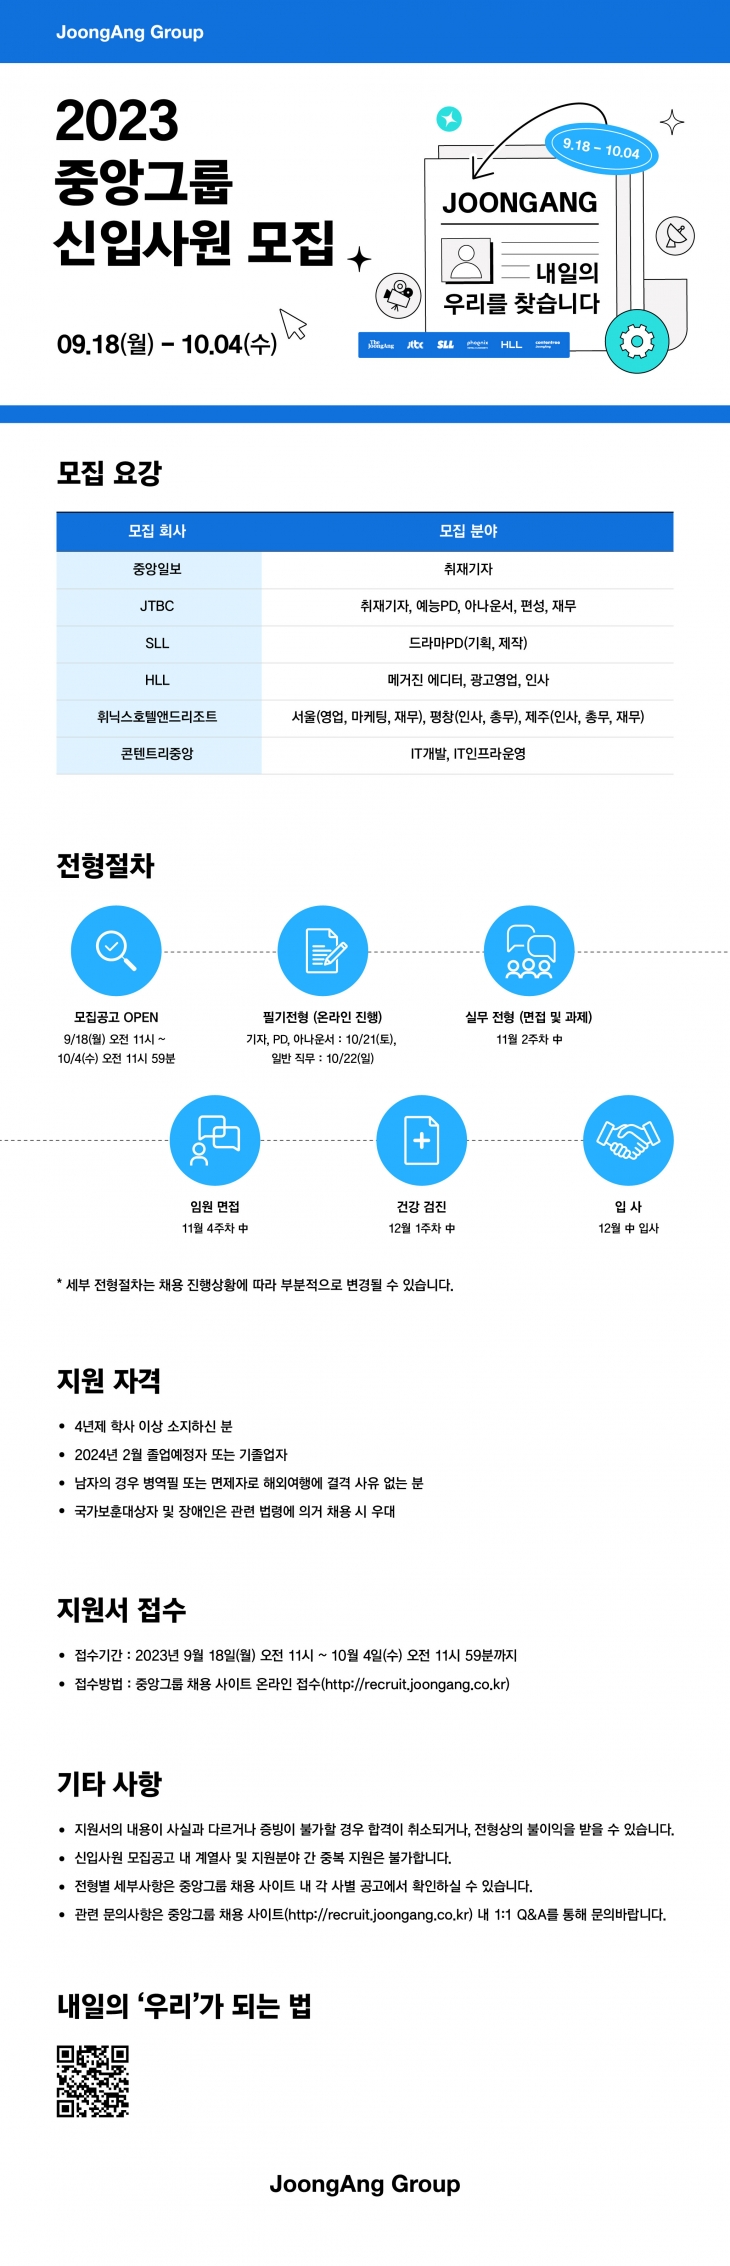 2023년 중앙그룹(휘닉스중앙) 신입사원 공개 채용 모집